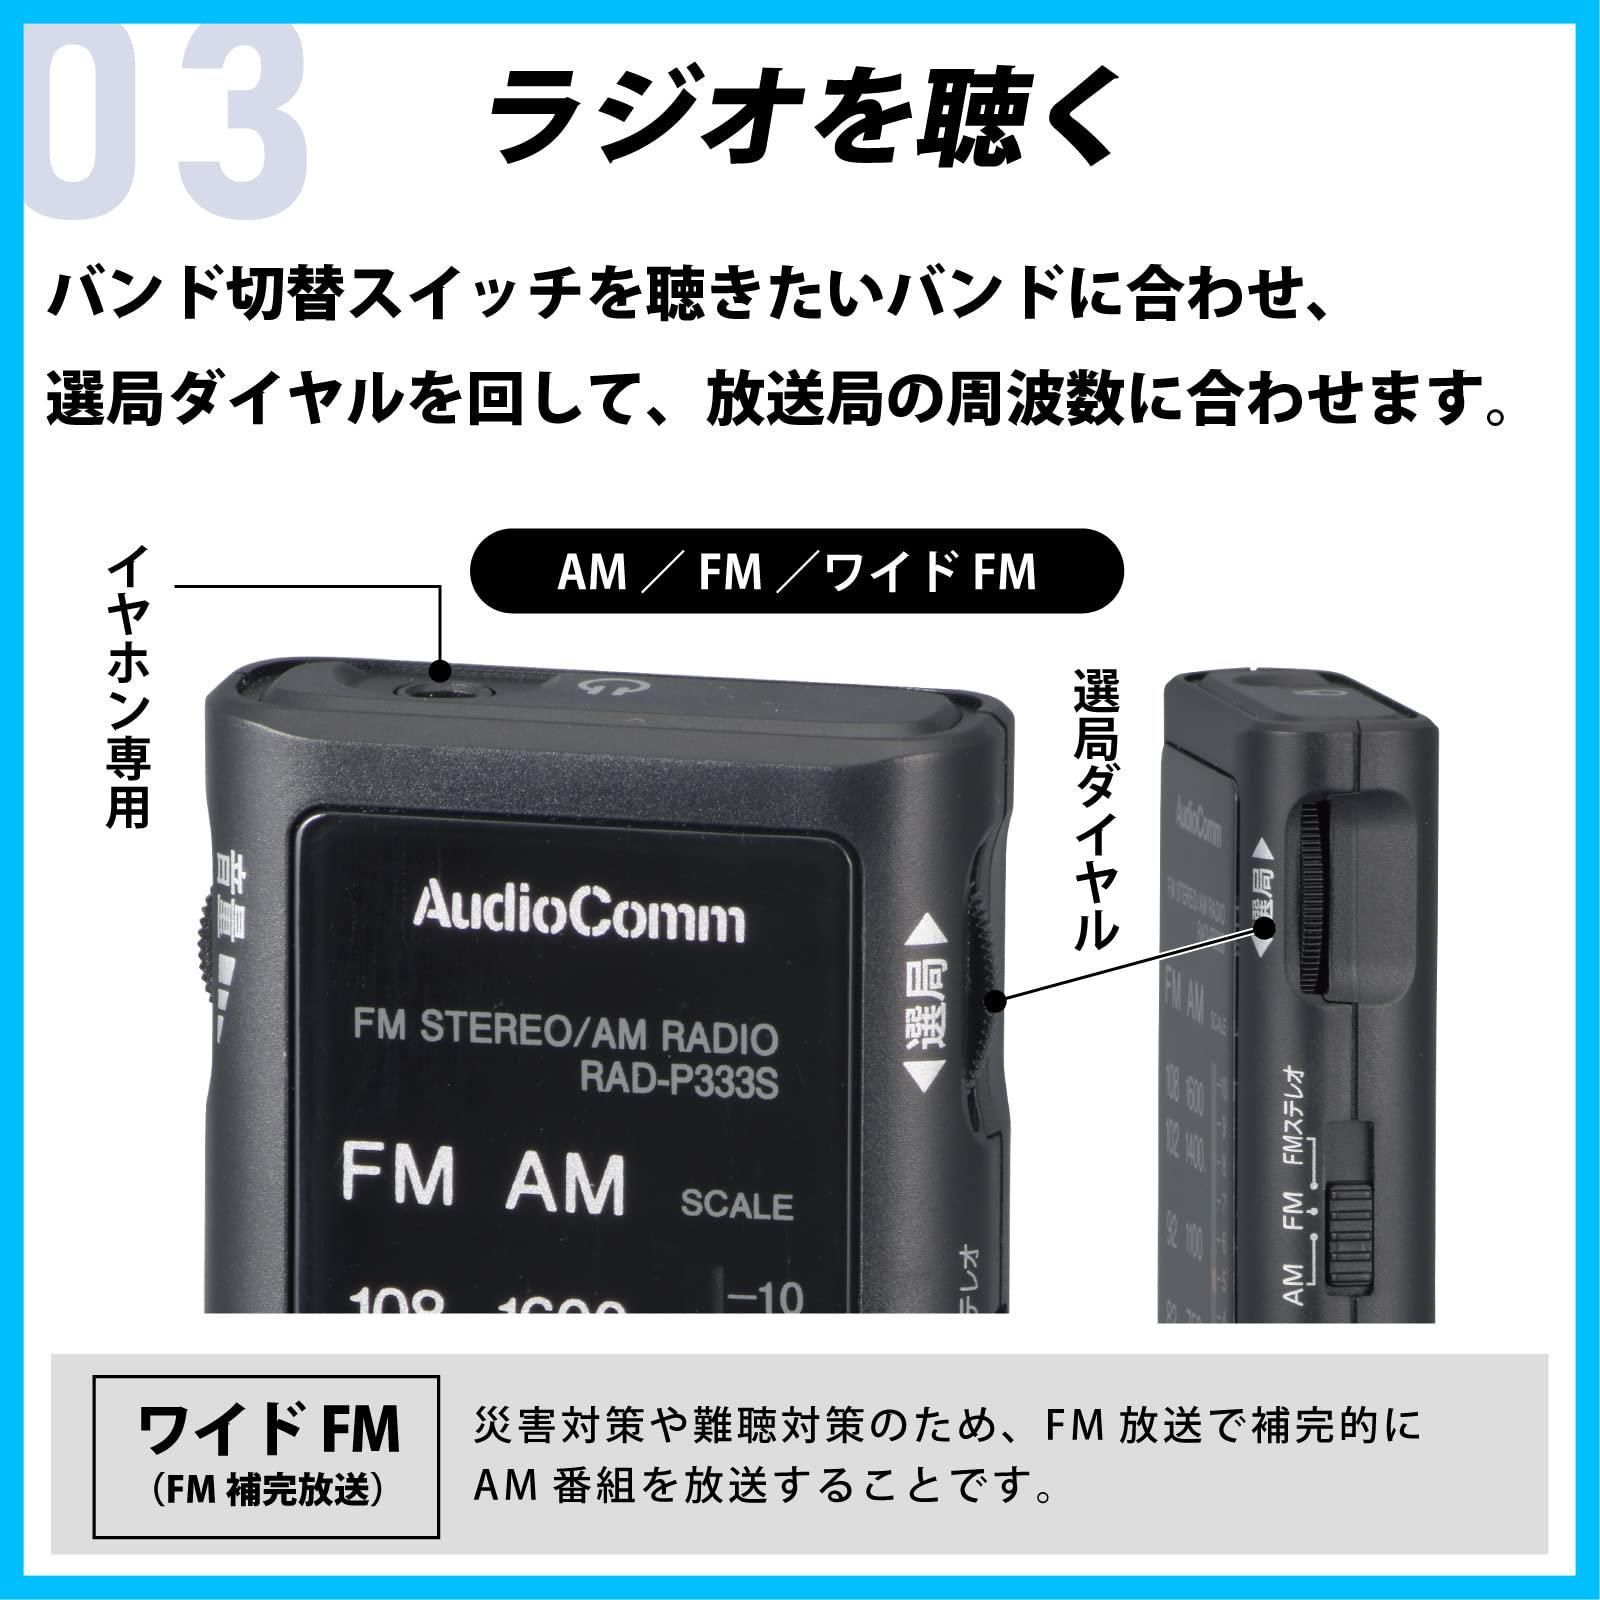 【迅速発送】オーム電機 ラジオ 小型 ポータブルラジオ ポケットラジオ AudioComm ライターサイズラジオ イヤホン専用 ブラック  RAD-P333S-K 03-0969 OHM